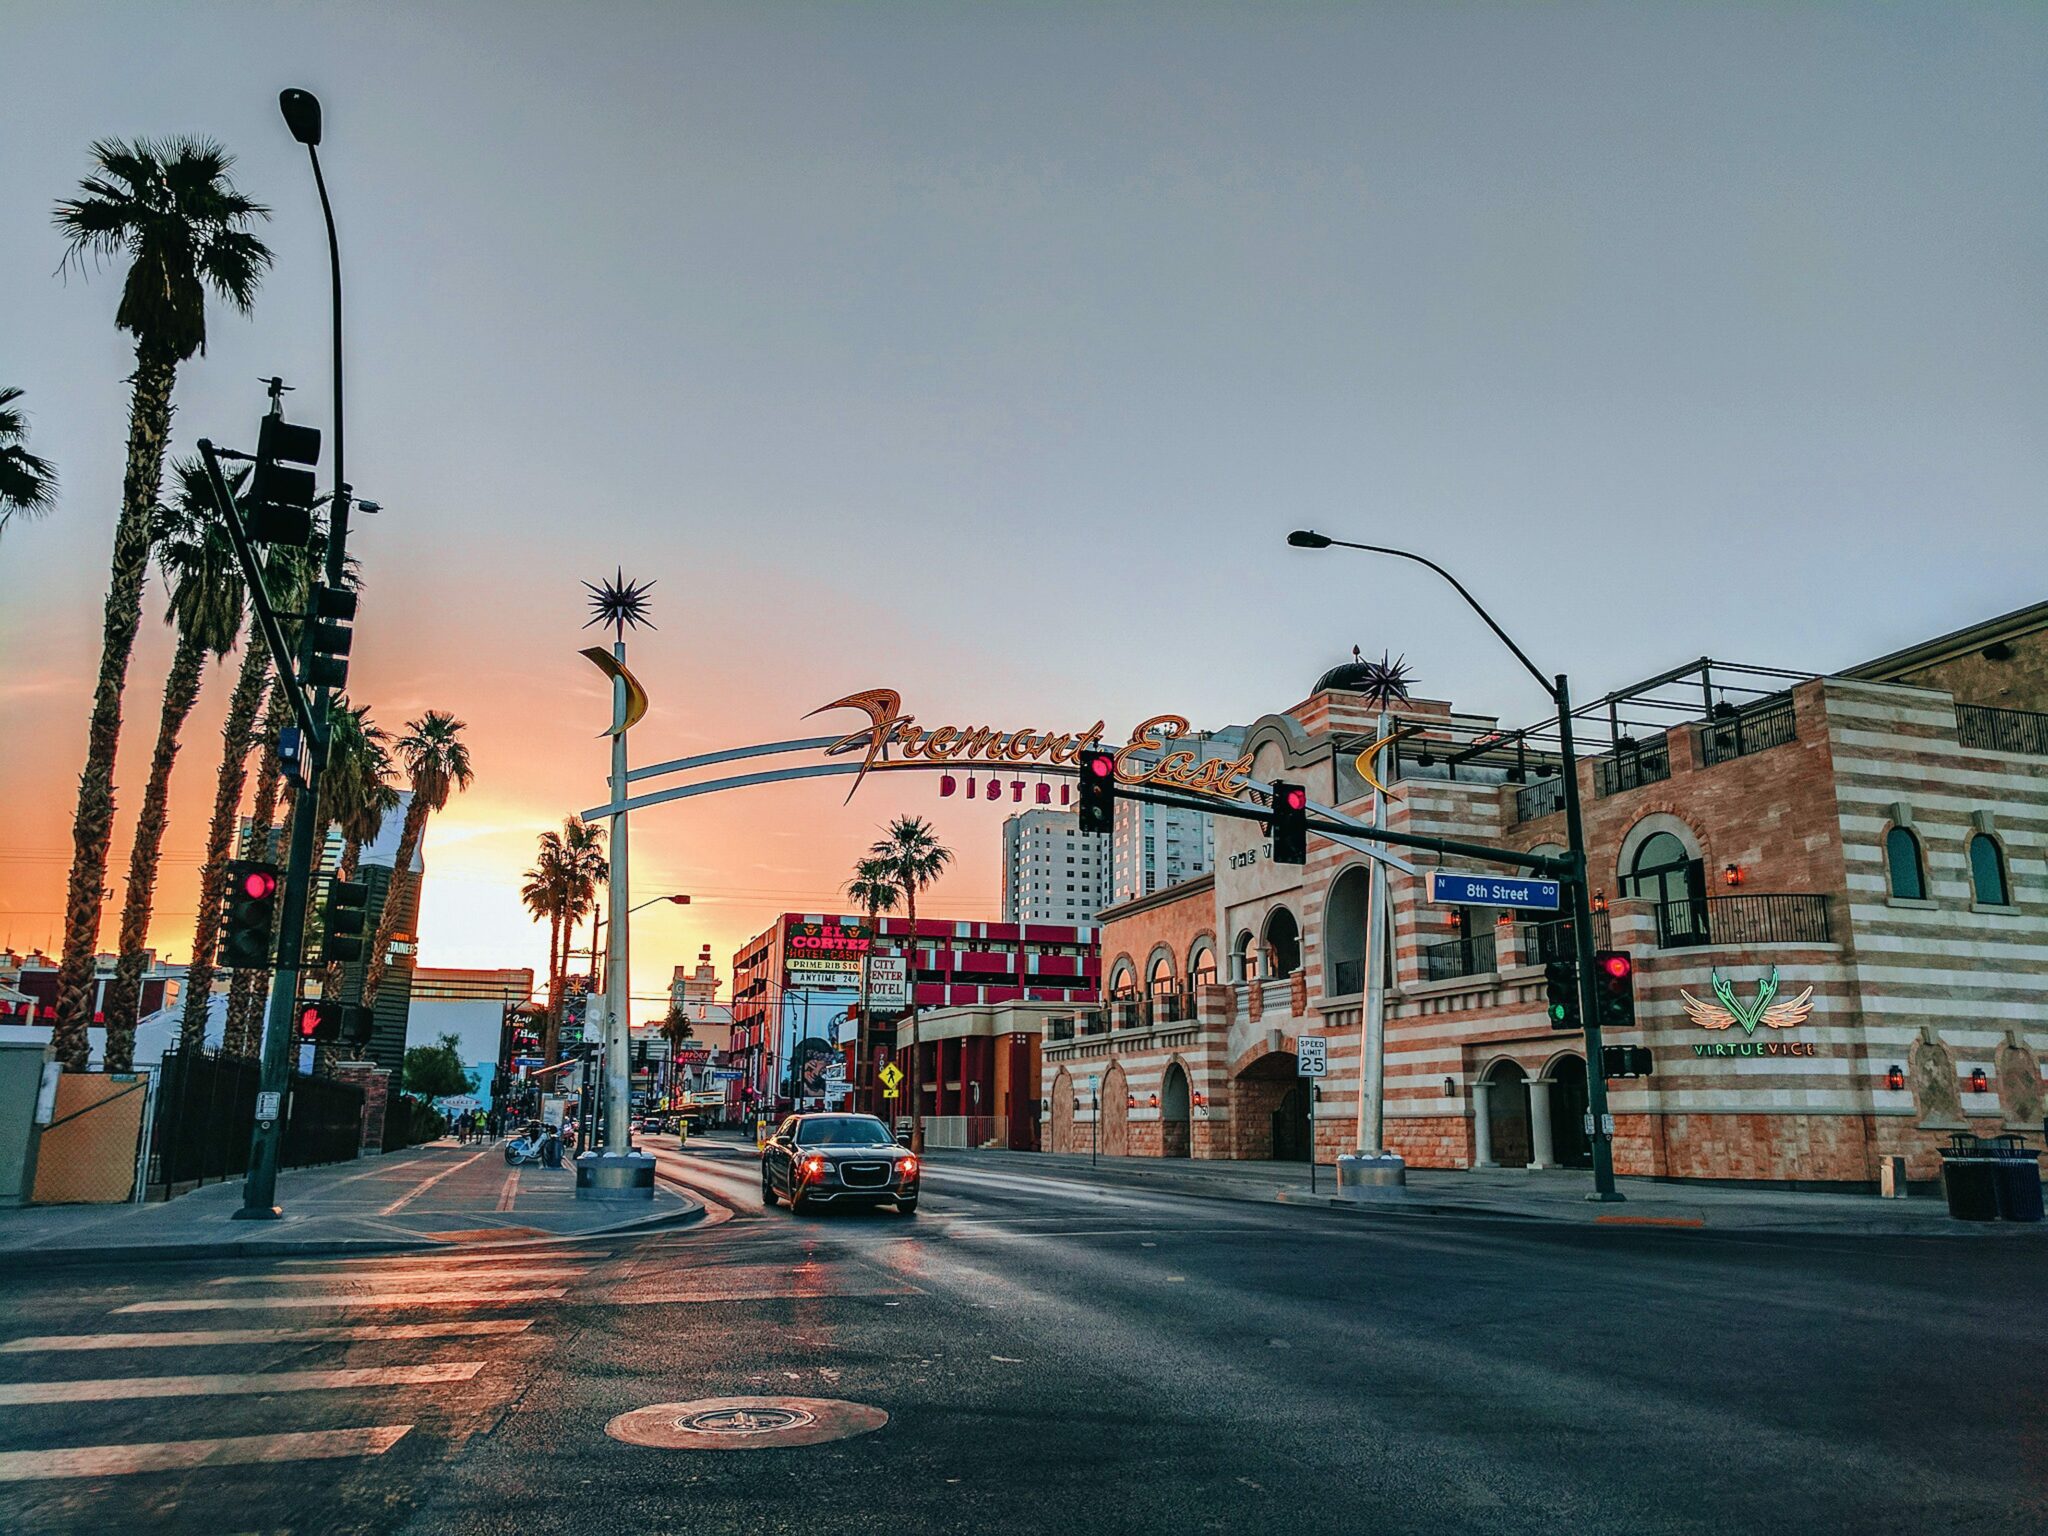 Main street in Las Vegas during sunset